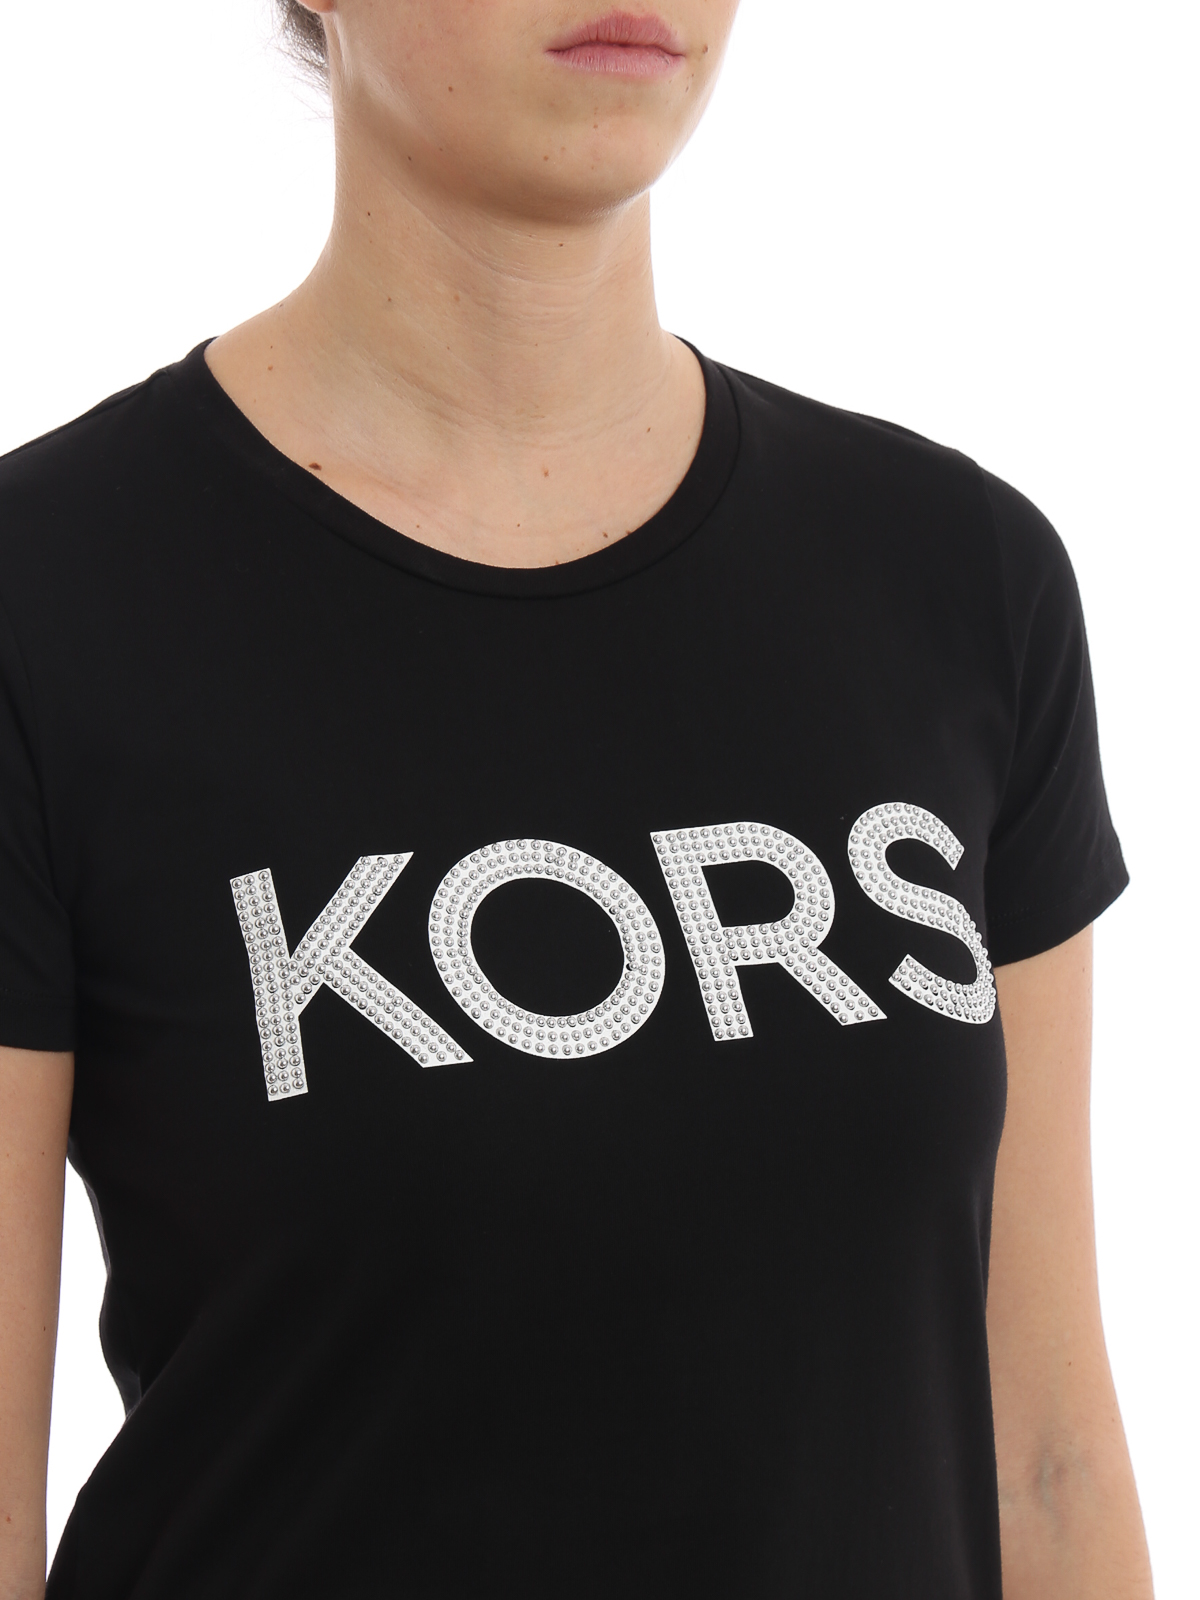 Michael Kors - Studded Kors logo black 